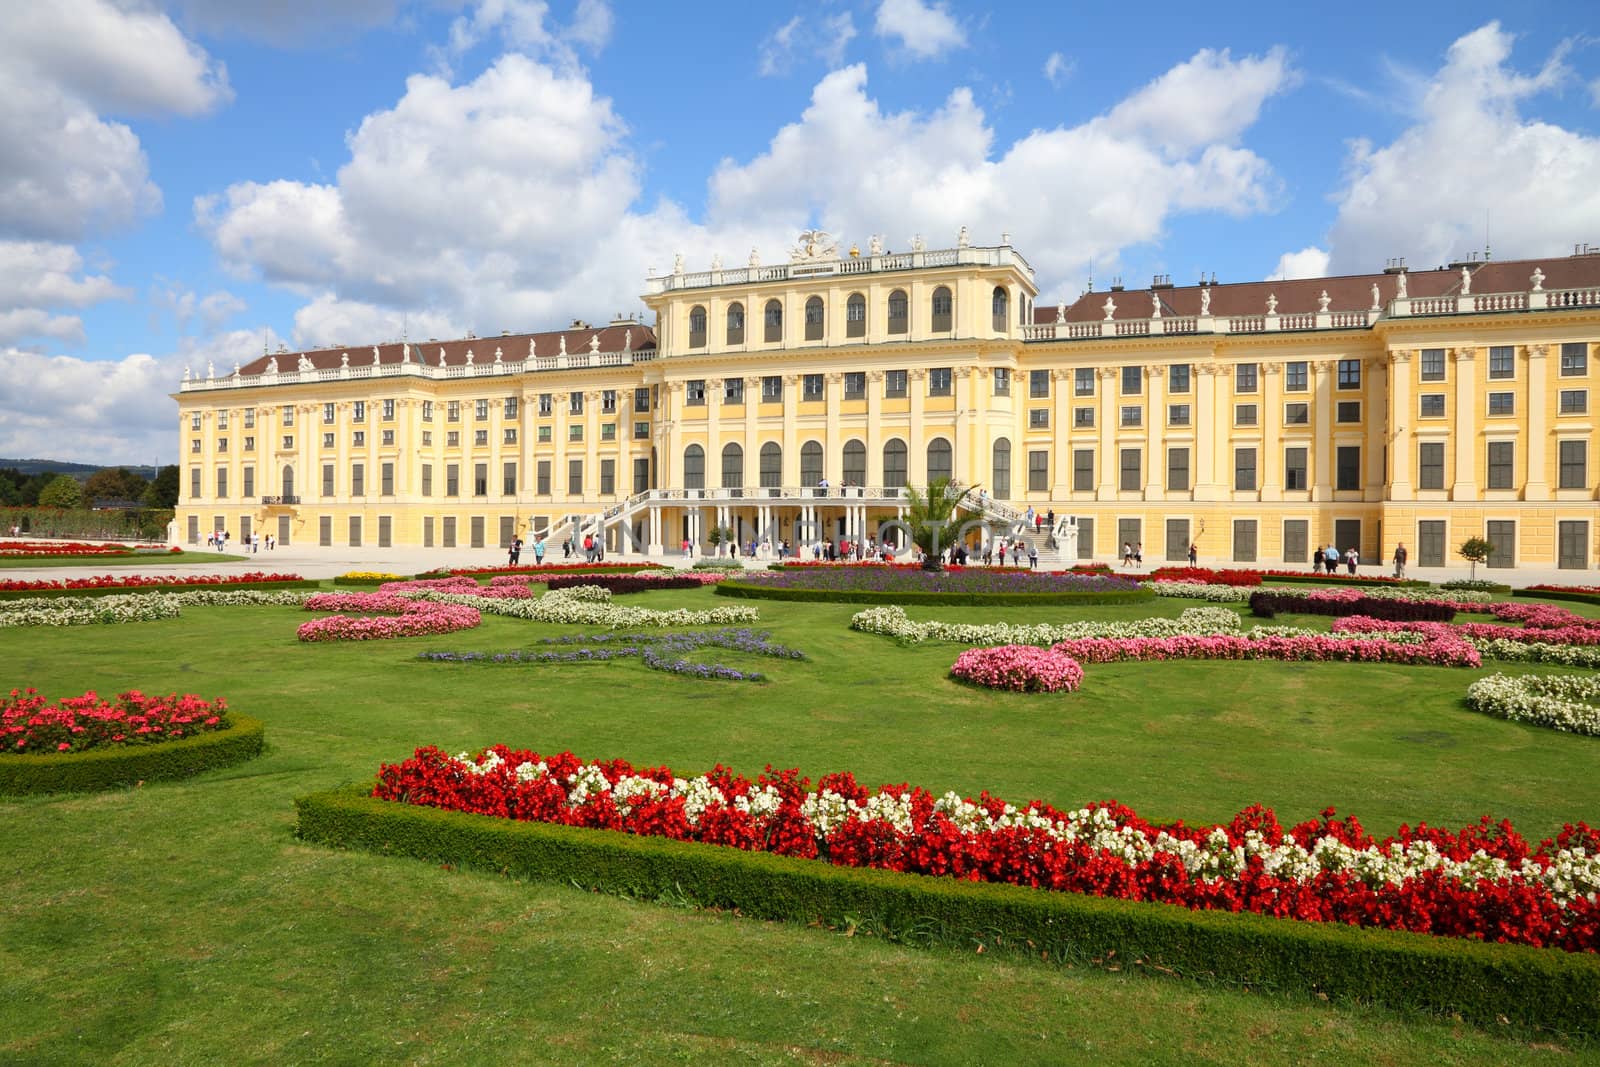 Vienna palace by tupungato